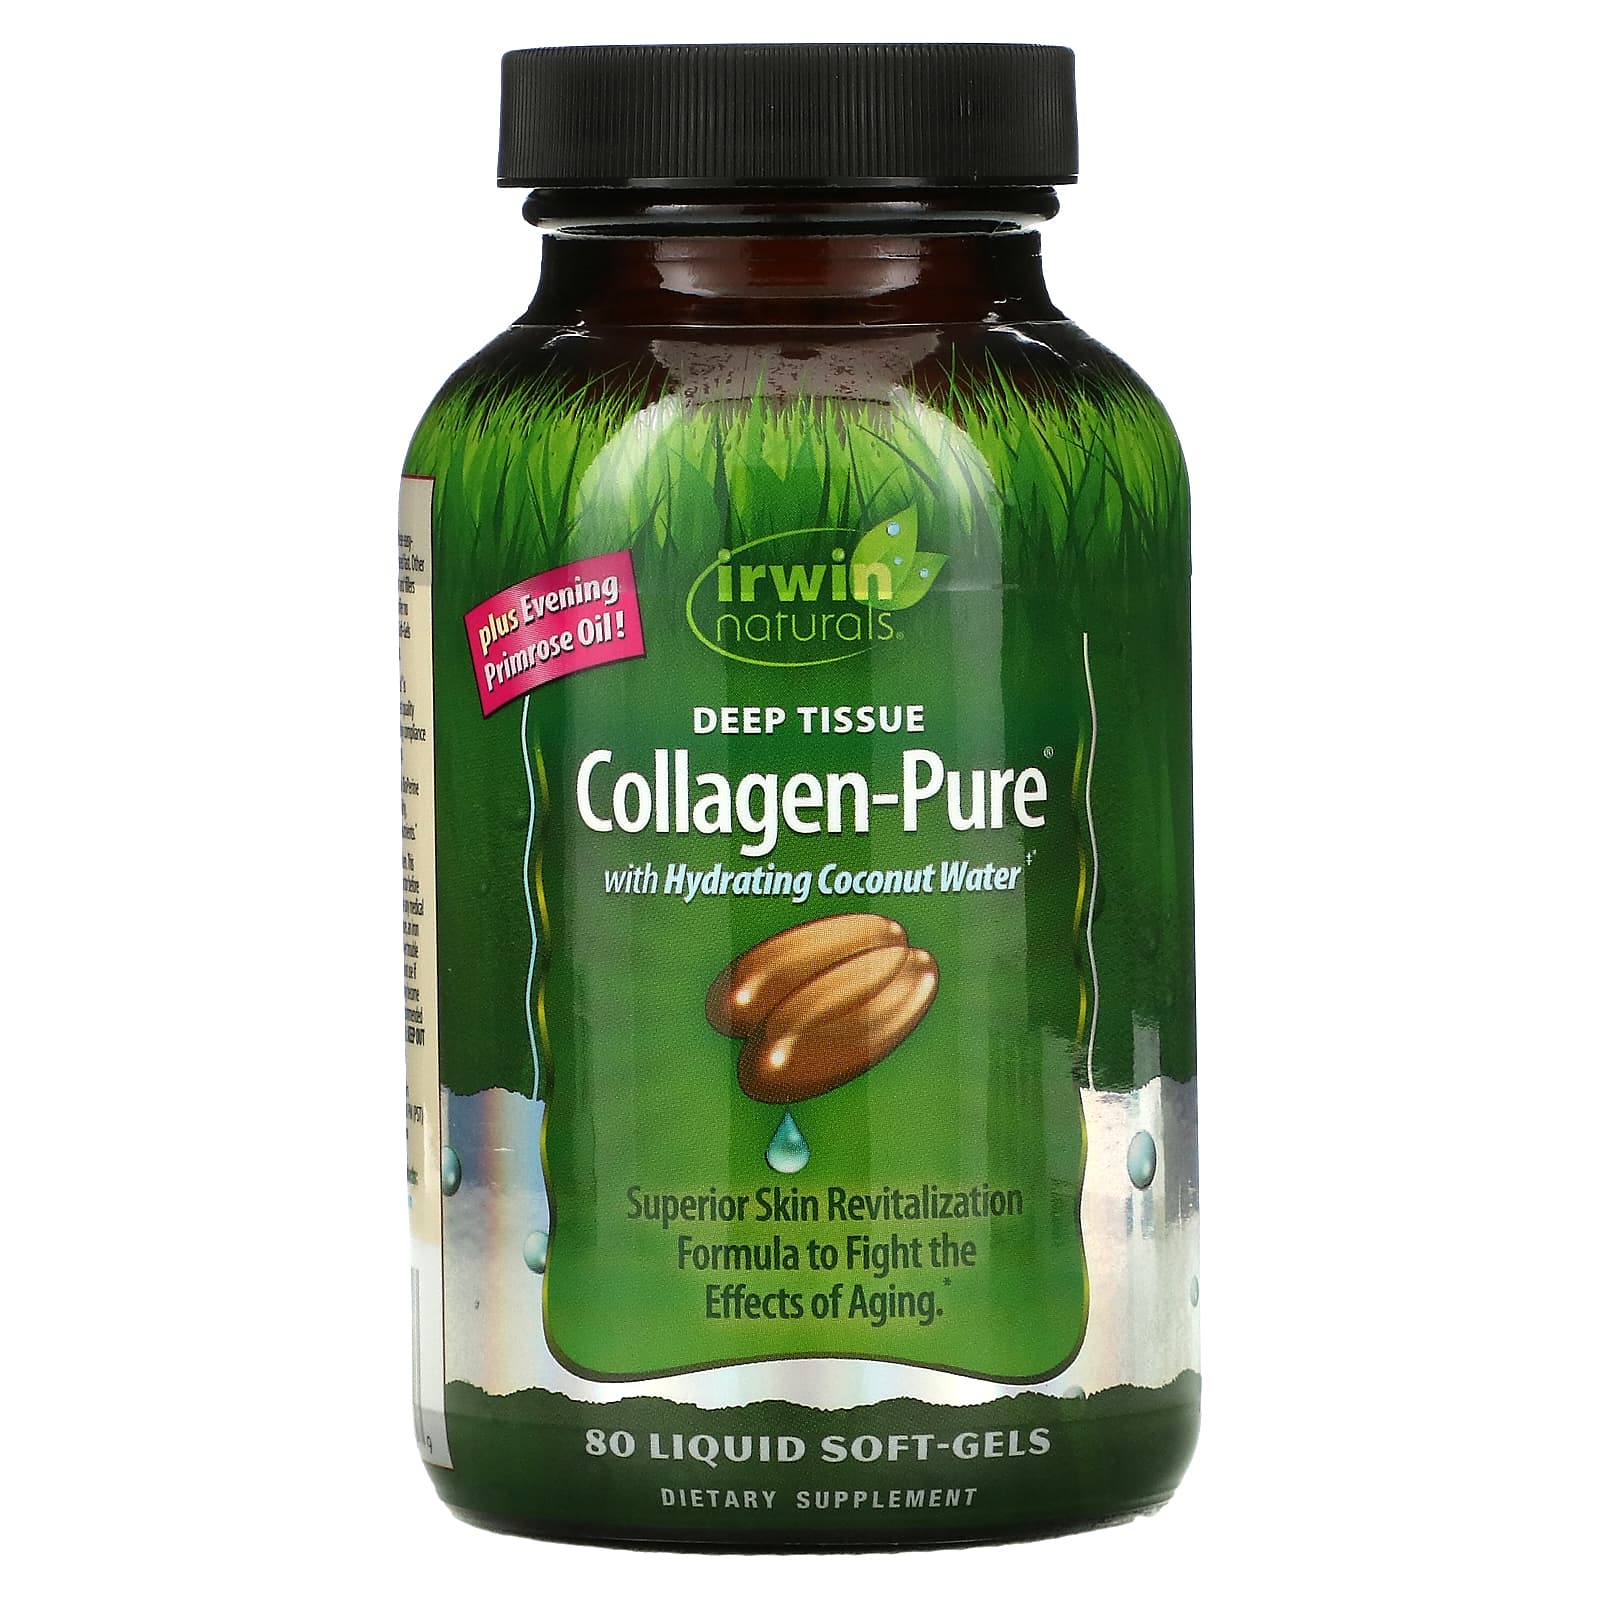 Irwin Naturals Deep Tissue Collagen-Pure Dietary Supplement Liquid Soft-Gels - 80ct